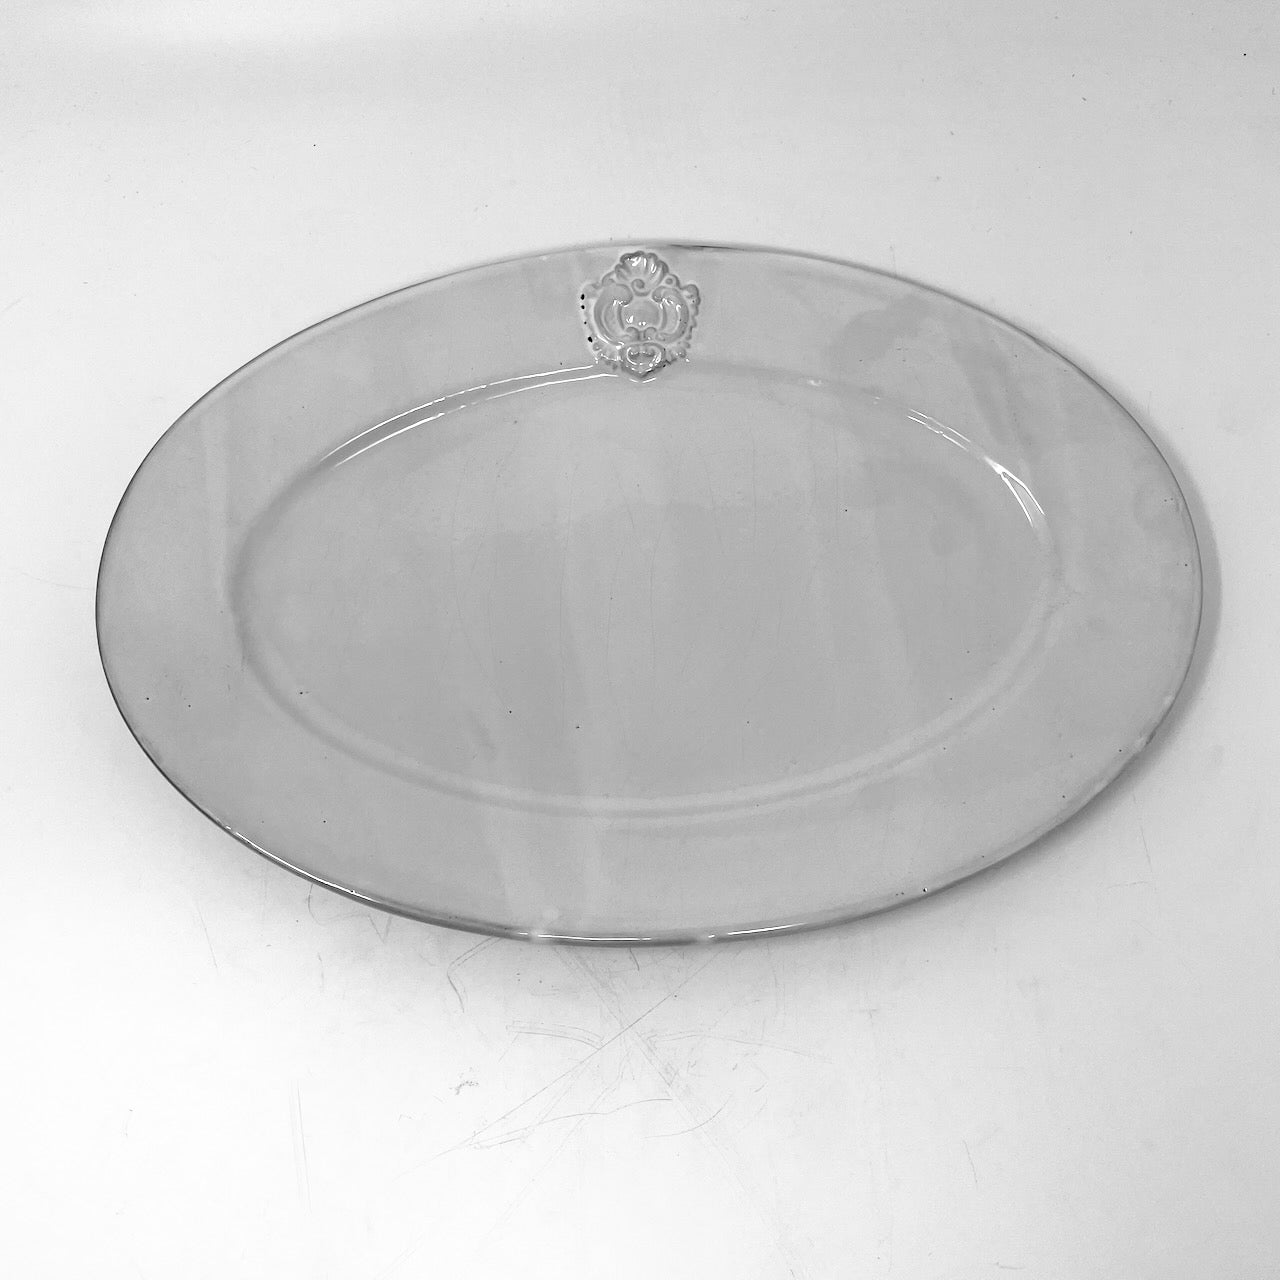 Charles oval platter